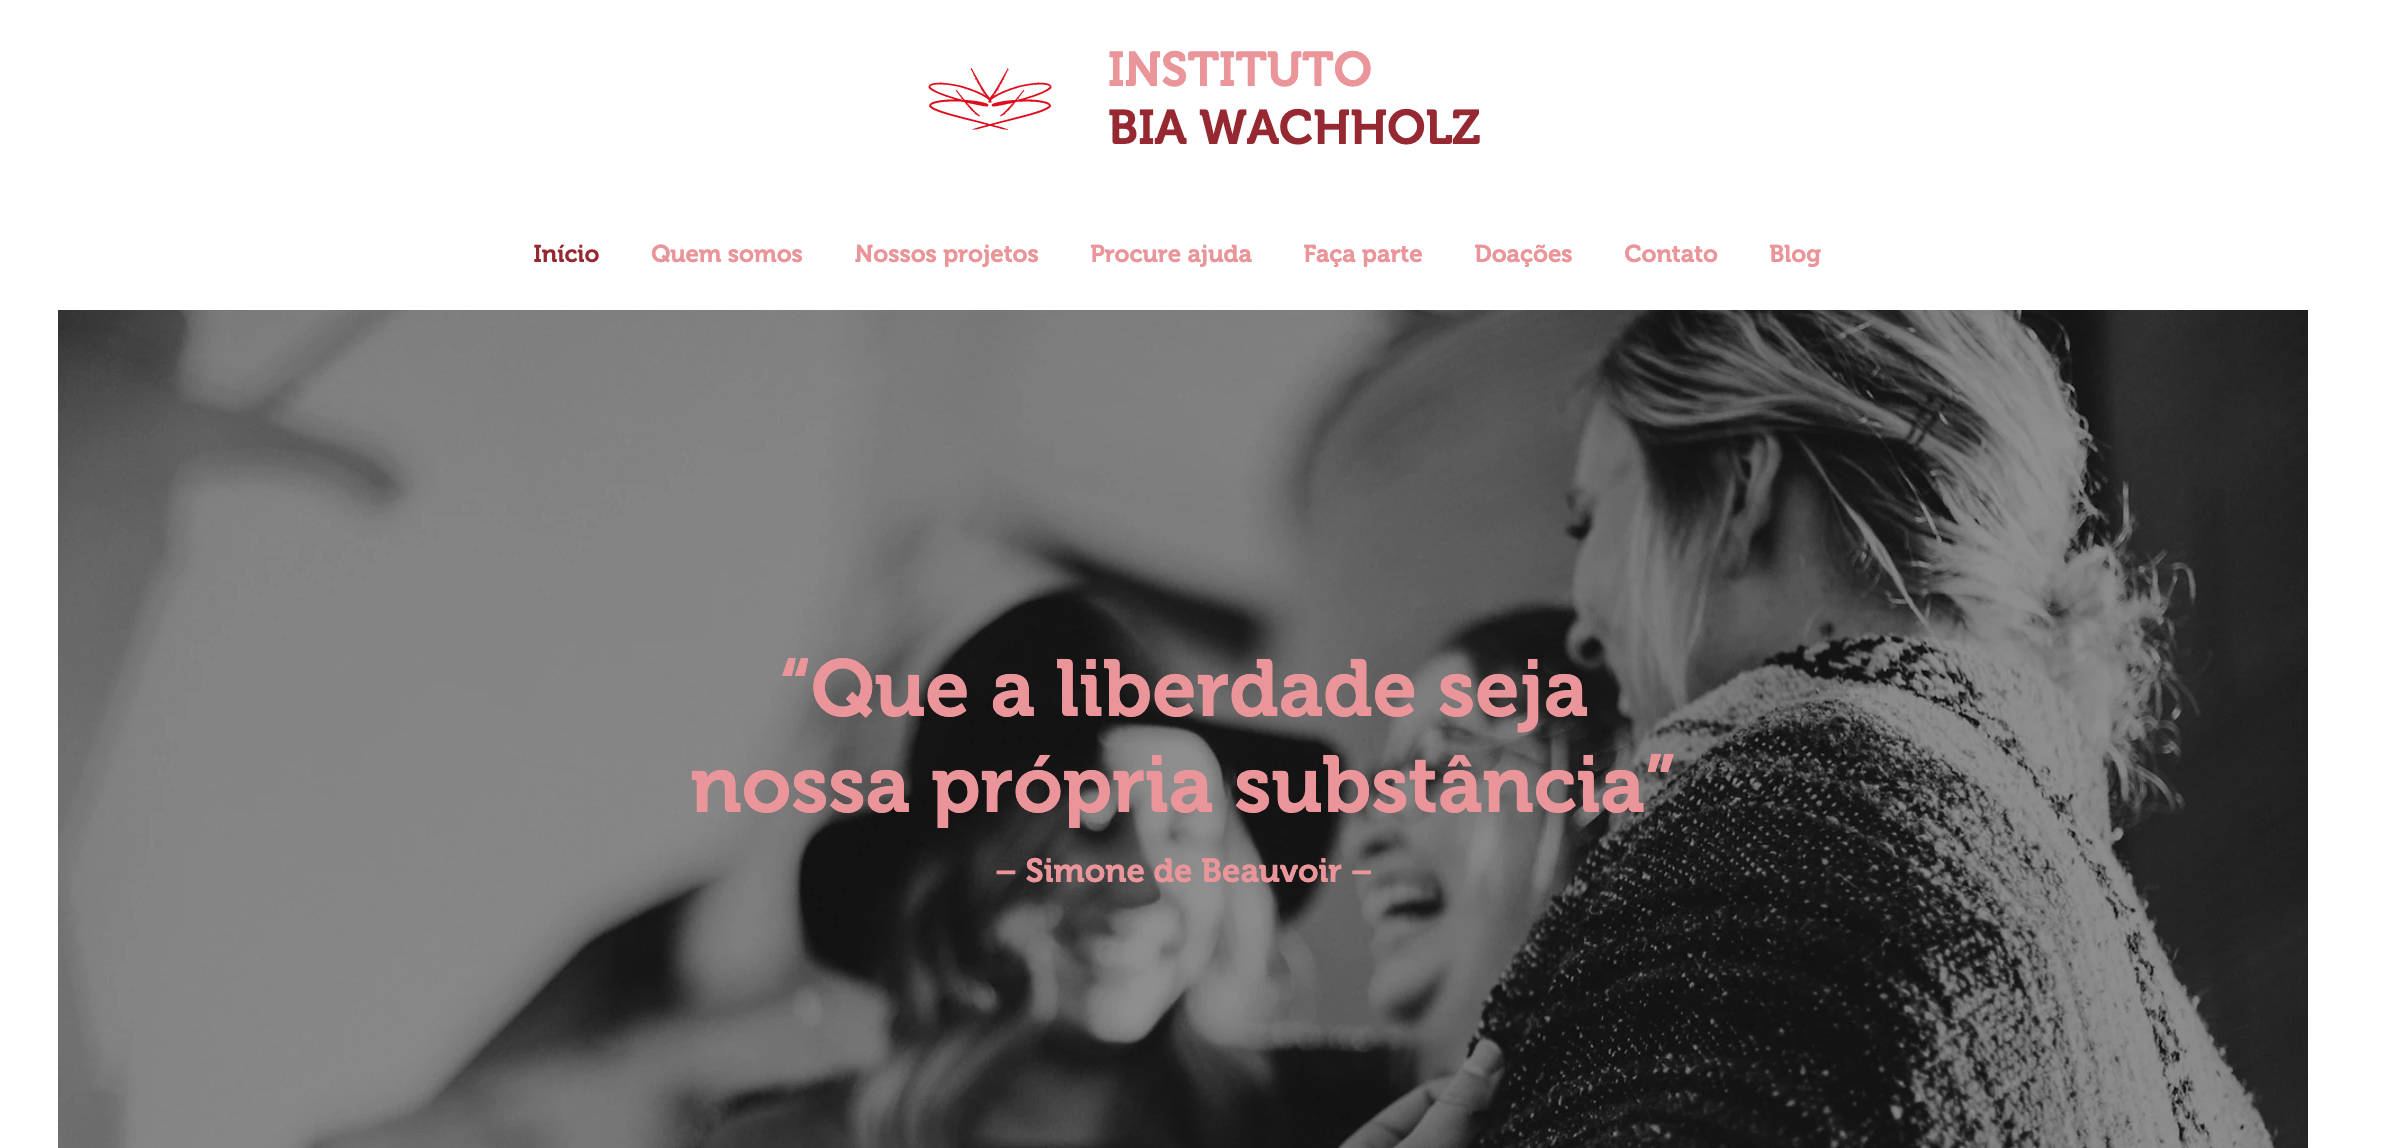 www.institutobiawachholz.com.br